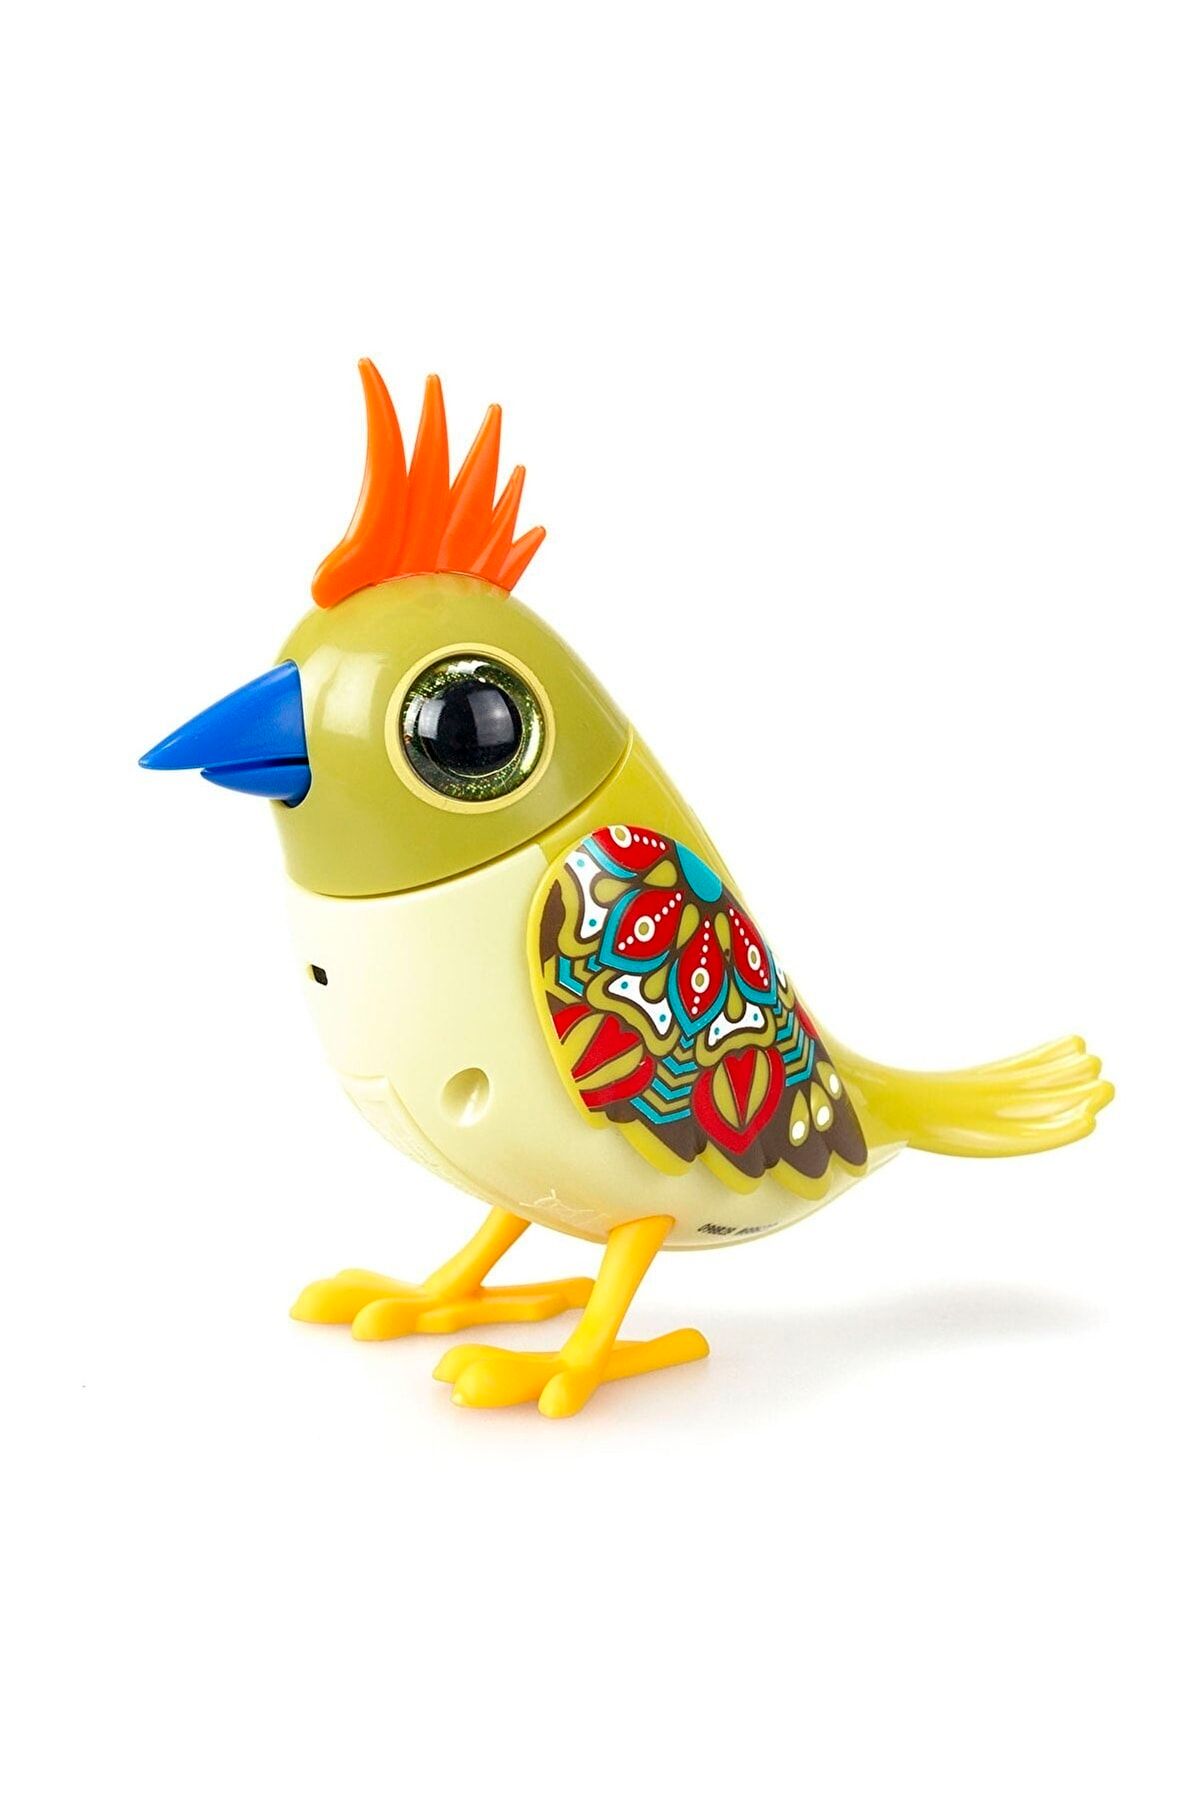 Tower Toys Digibirds Tekli Paket Seri 2 Digibirds, Cıvıldayan, Şarkı Söyleyebilen Etkileşimli Bir Kuştur.